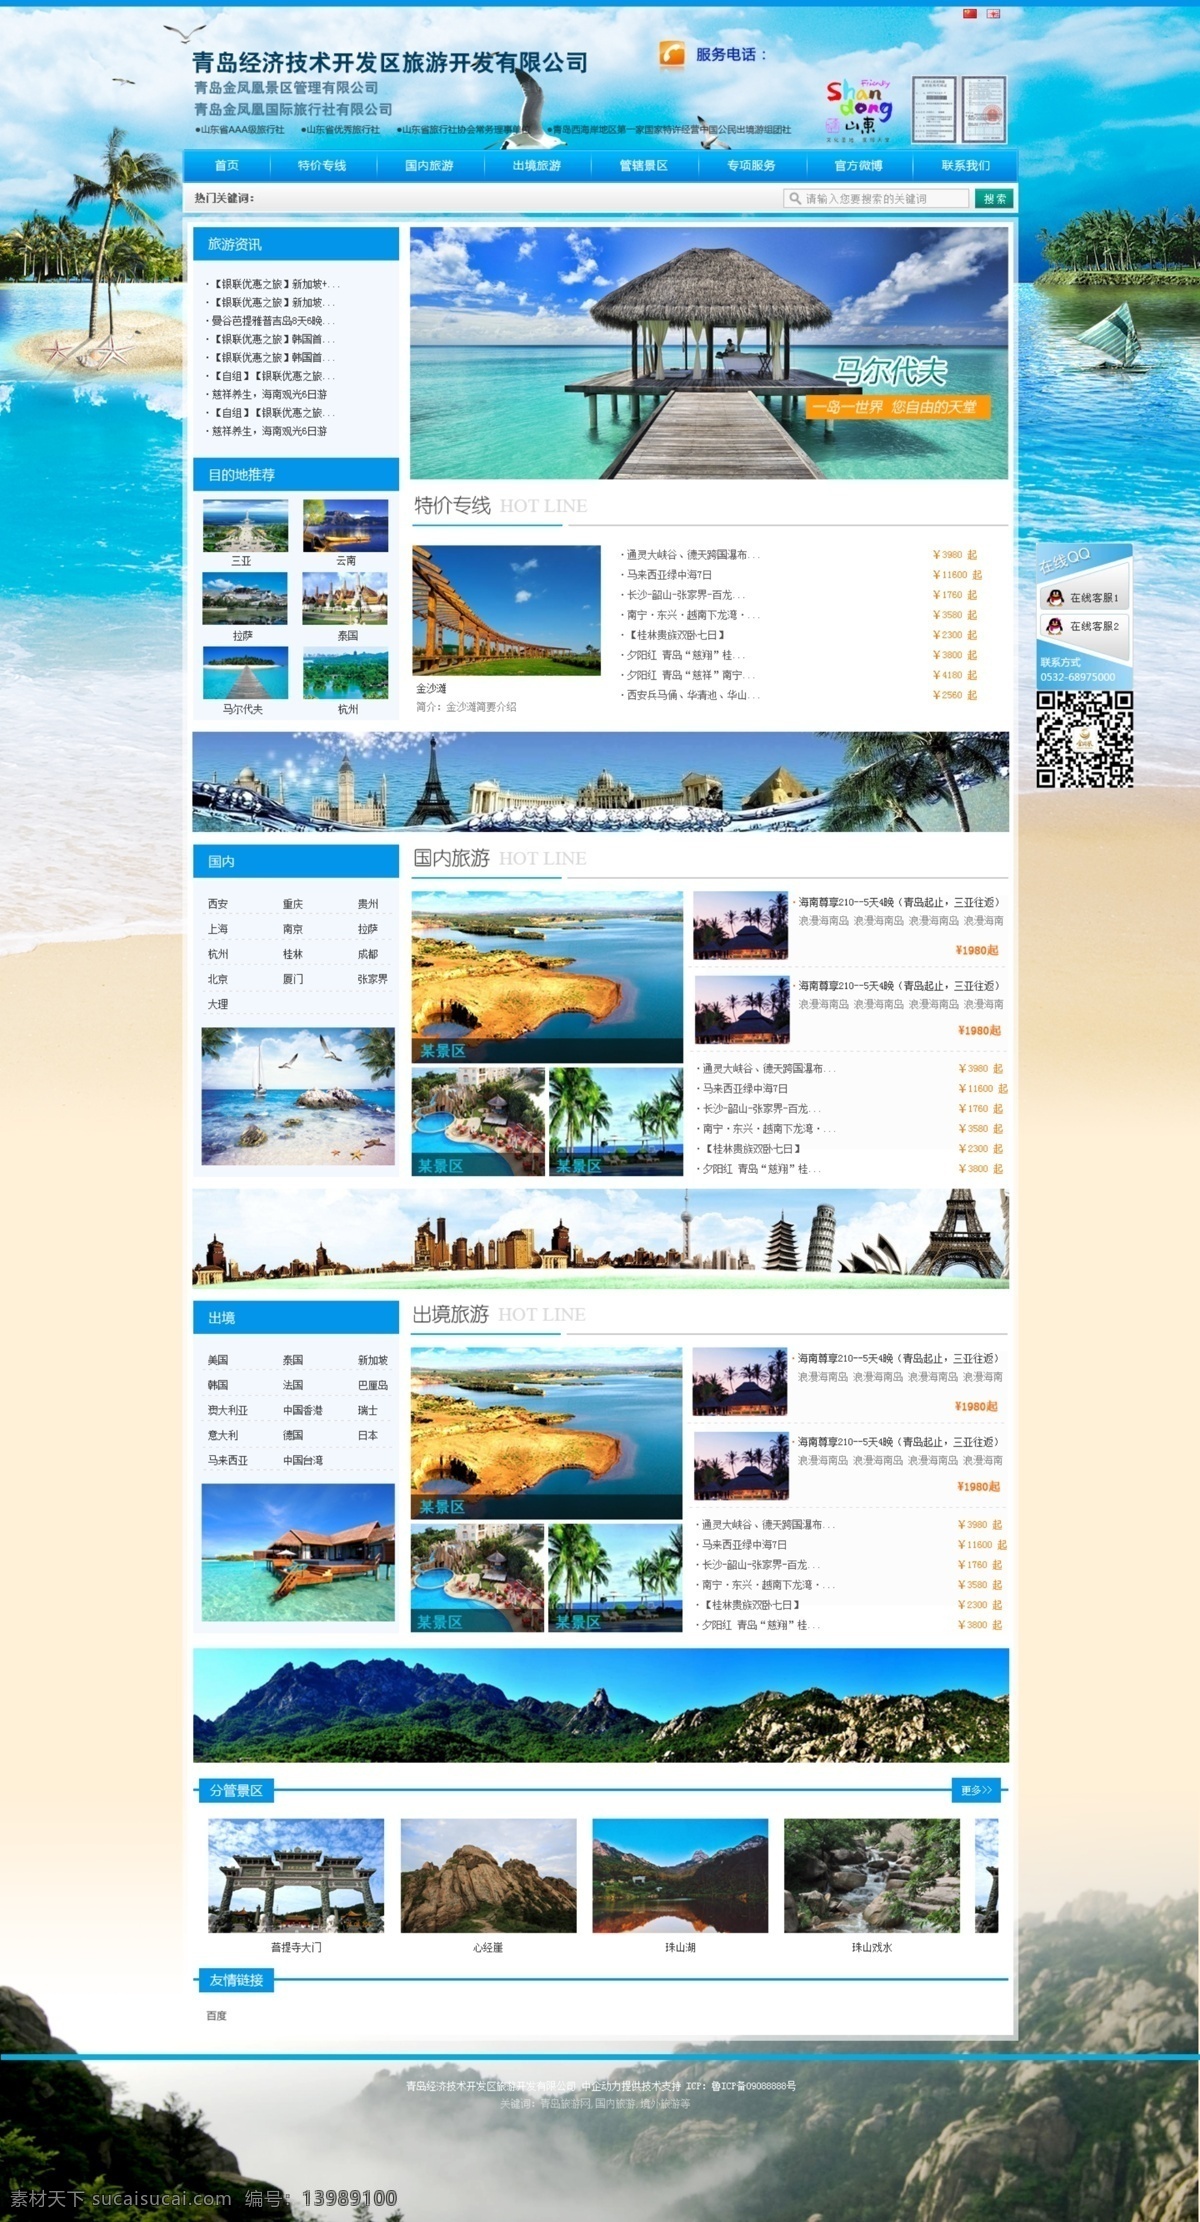 旅游网站 旅游 旅游网 自由行 境外游 国内游 旅游类 网站 网页 web 界面设计 中文模板